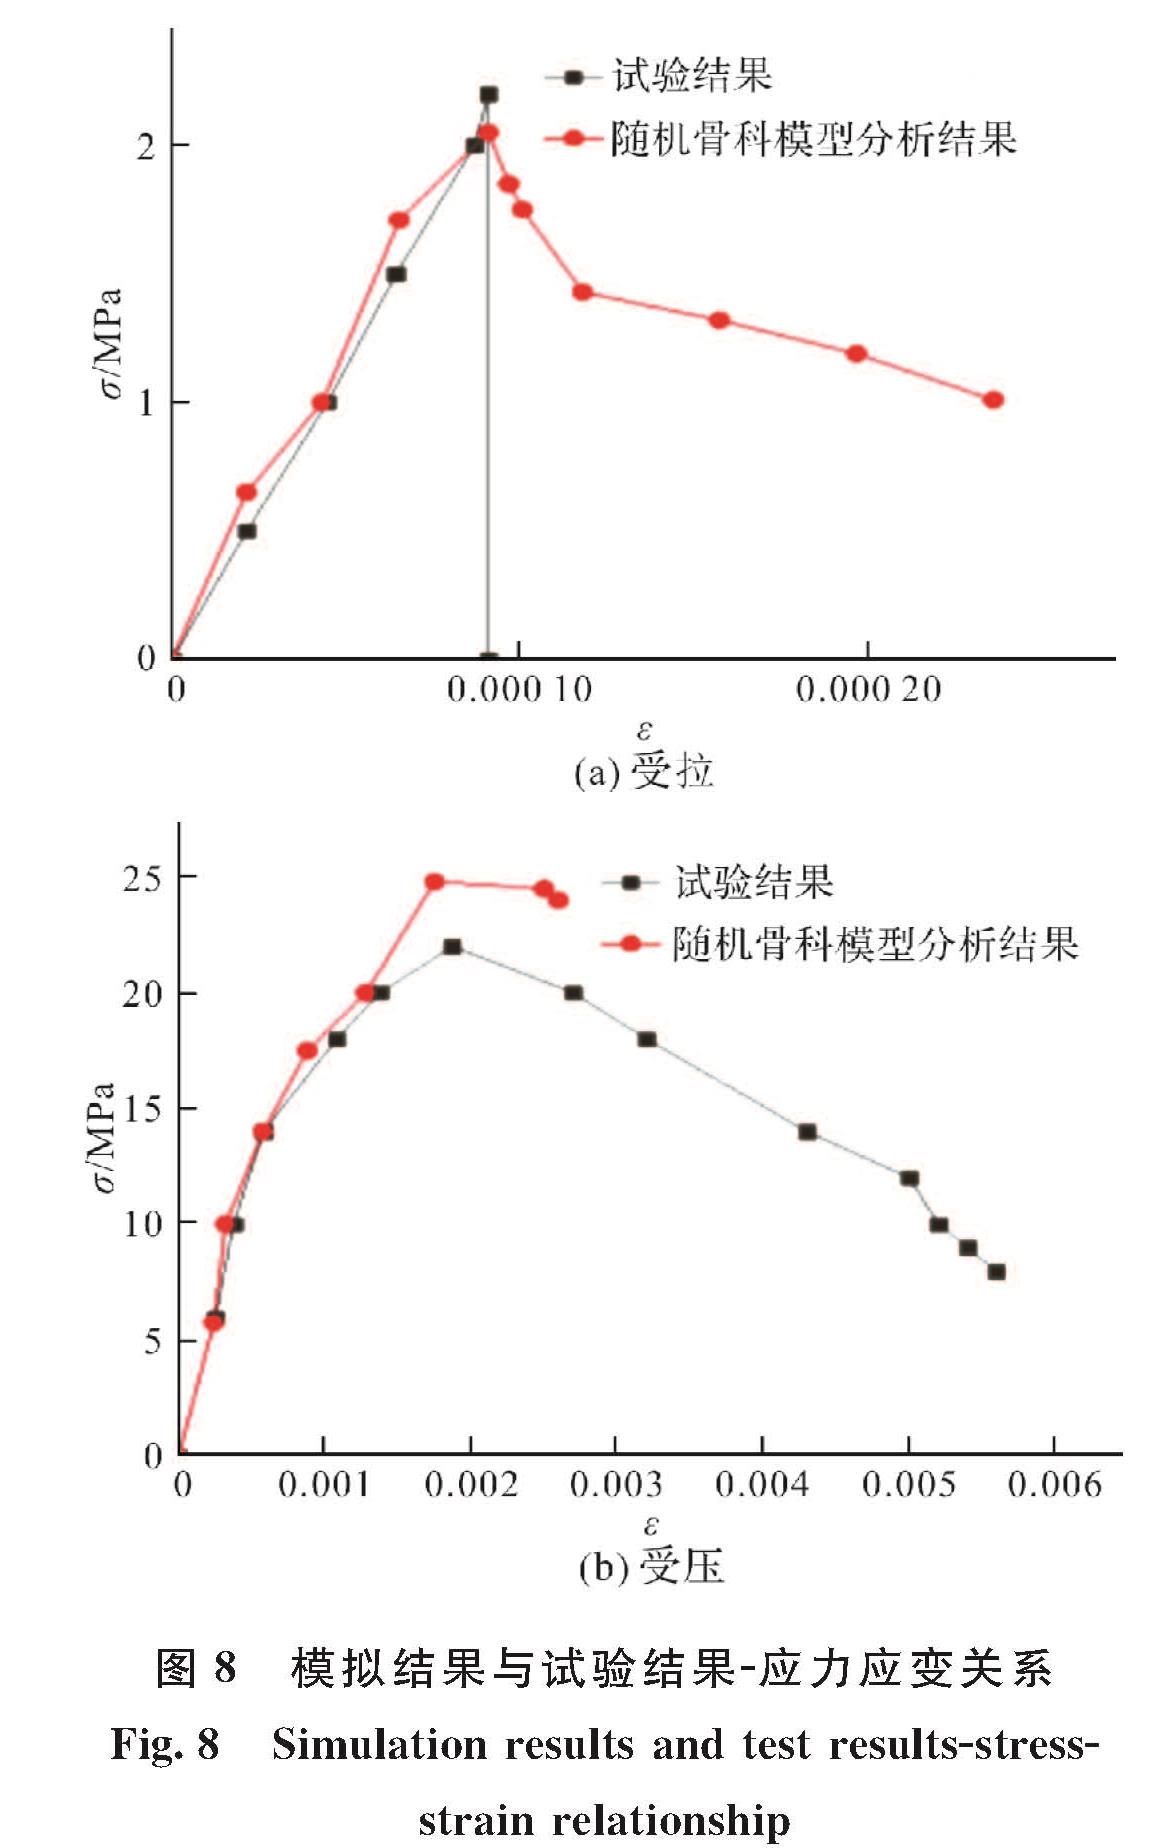 图8 模拟结果与试验结果-应力应变关系<br/>Fig.8 Simulation results and test results-stress-strain relationship